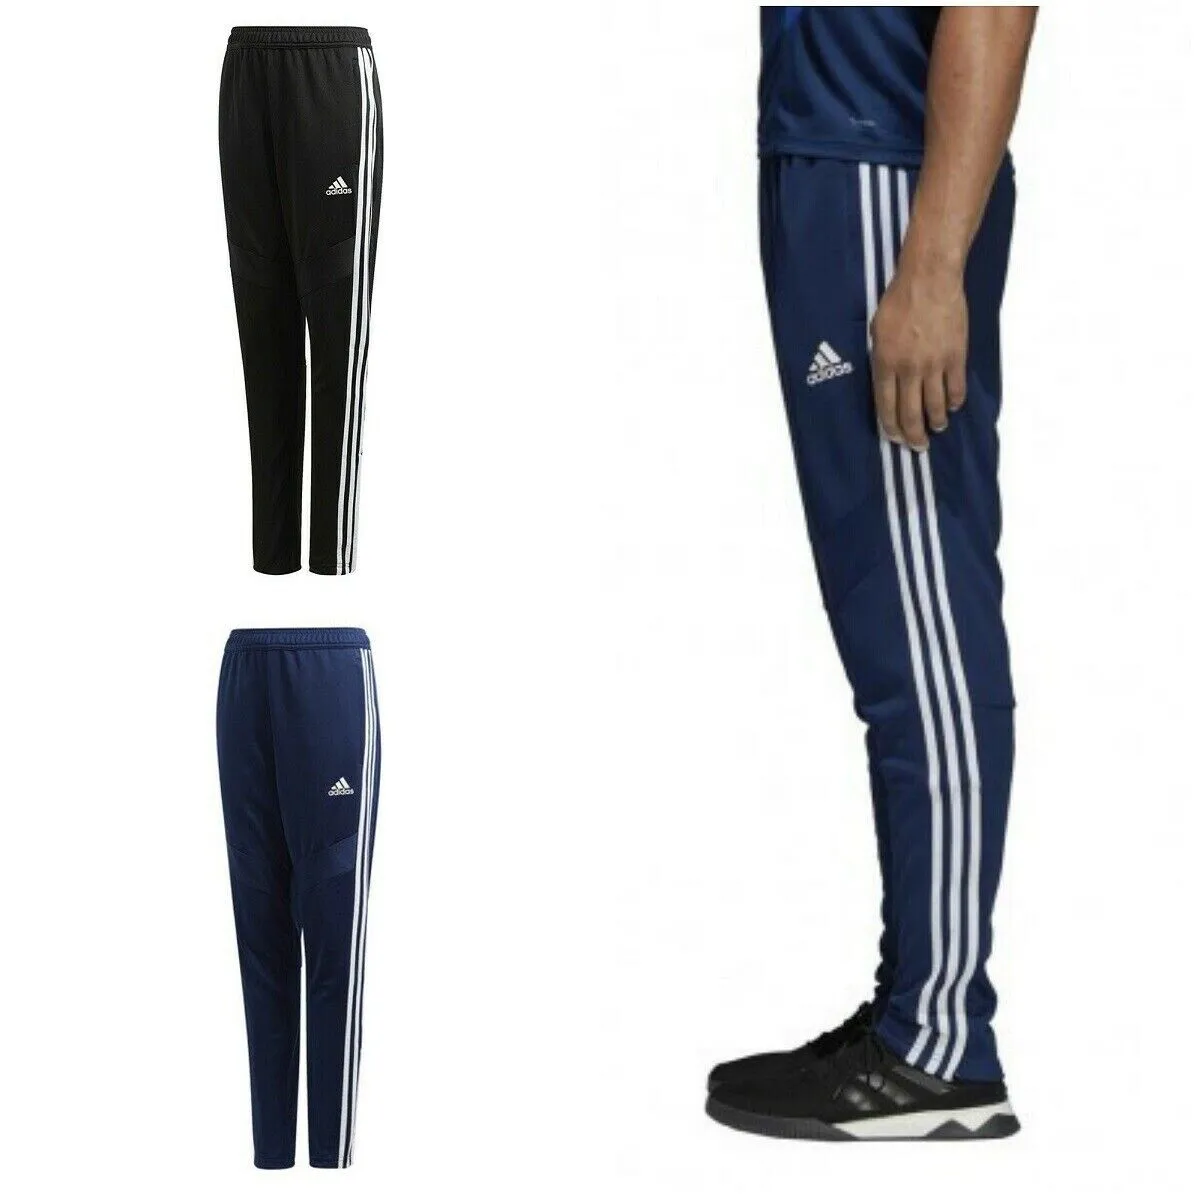 forståelse Ambassade Spild Adidas New Junior Boys Tiro 19 Pants Bottom Tapered Football Fit Black Navy  | eBay